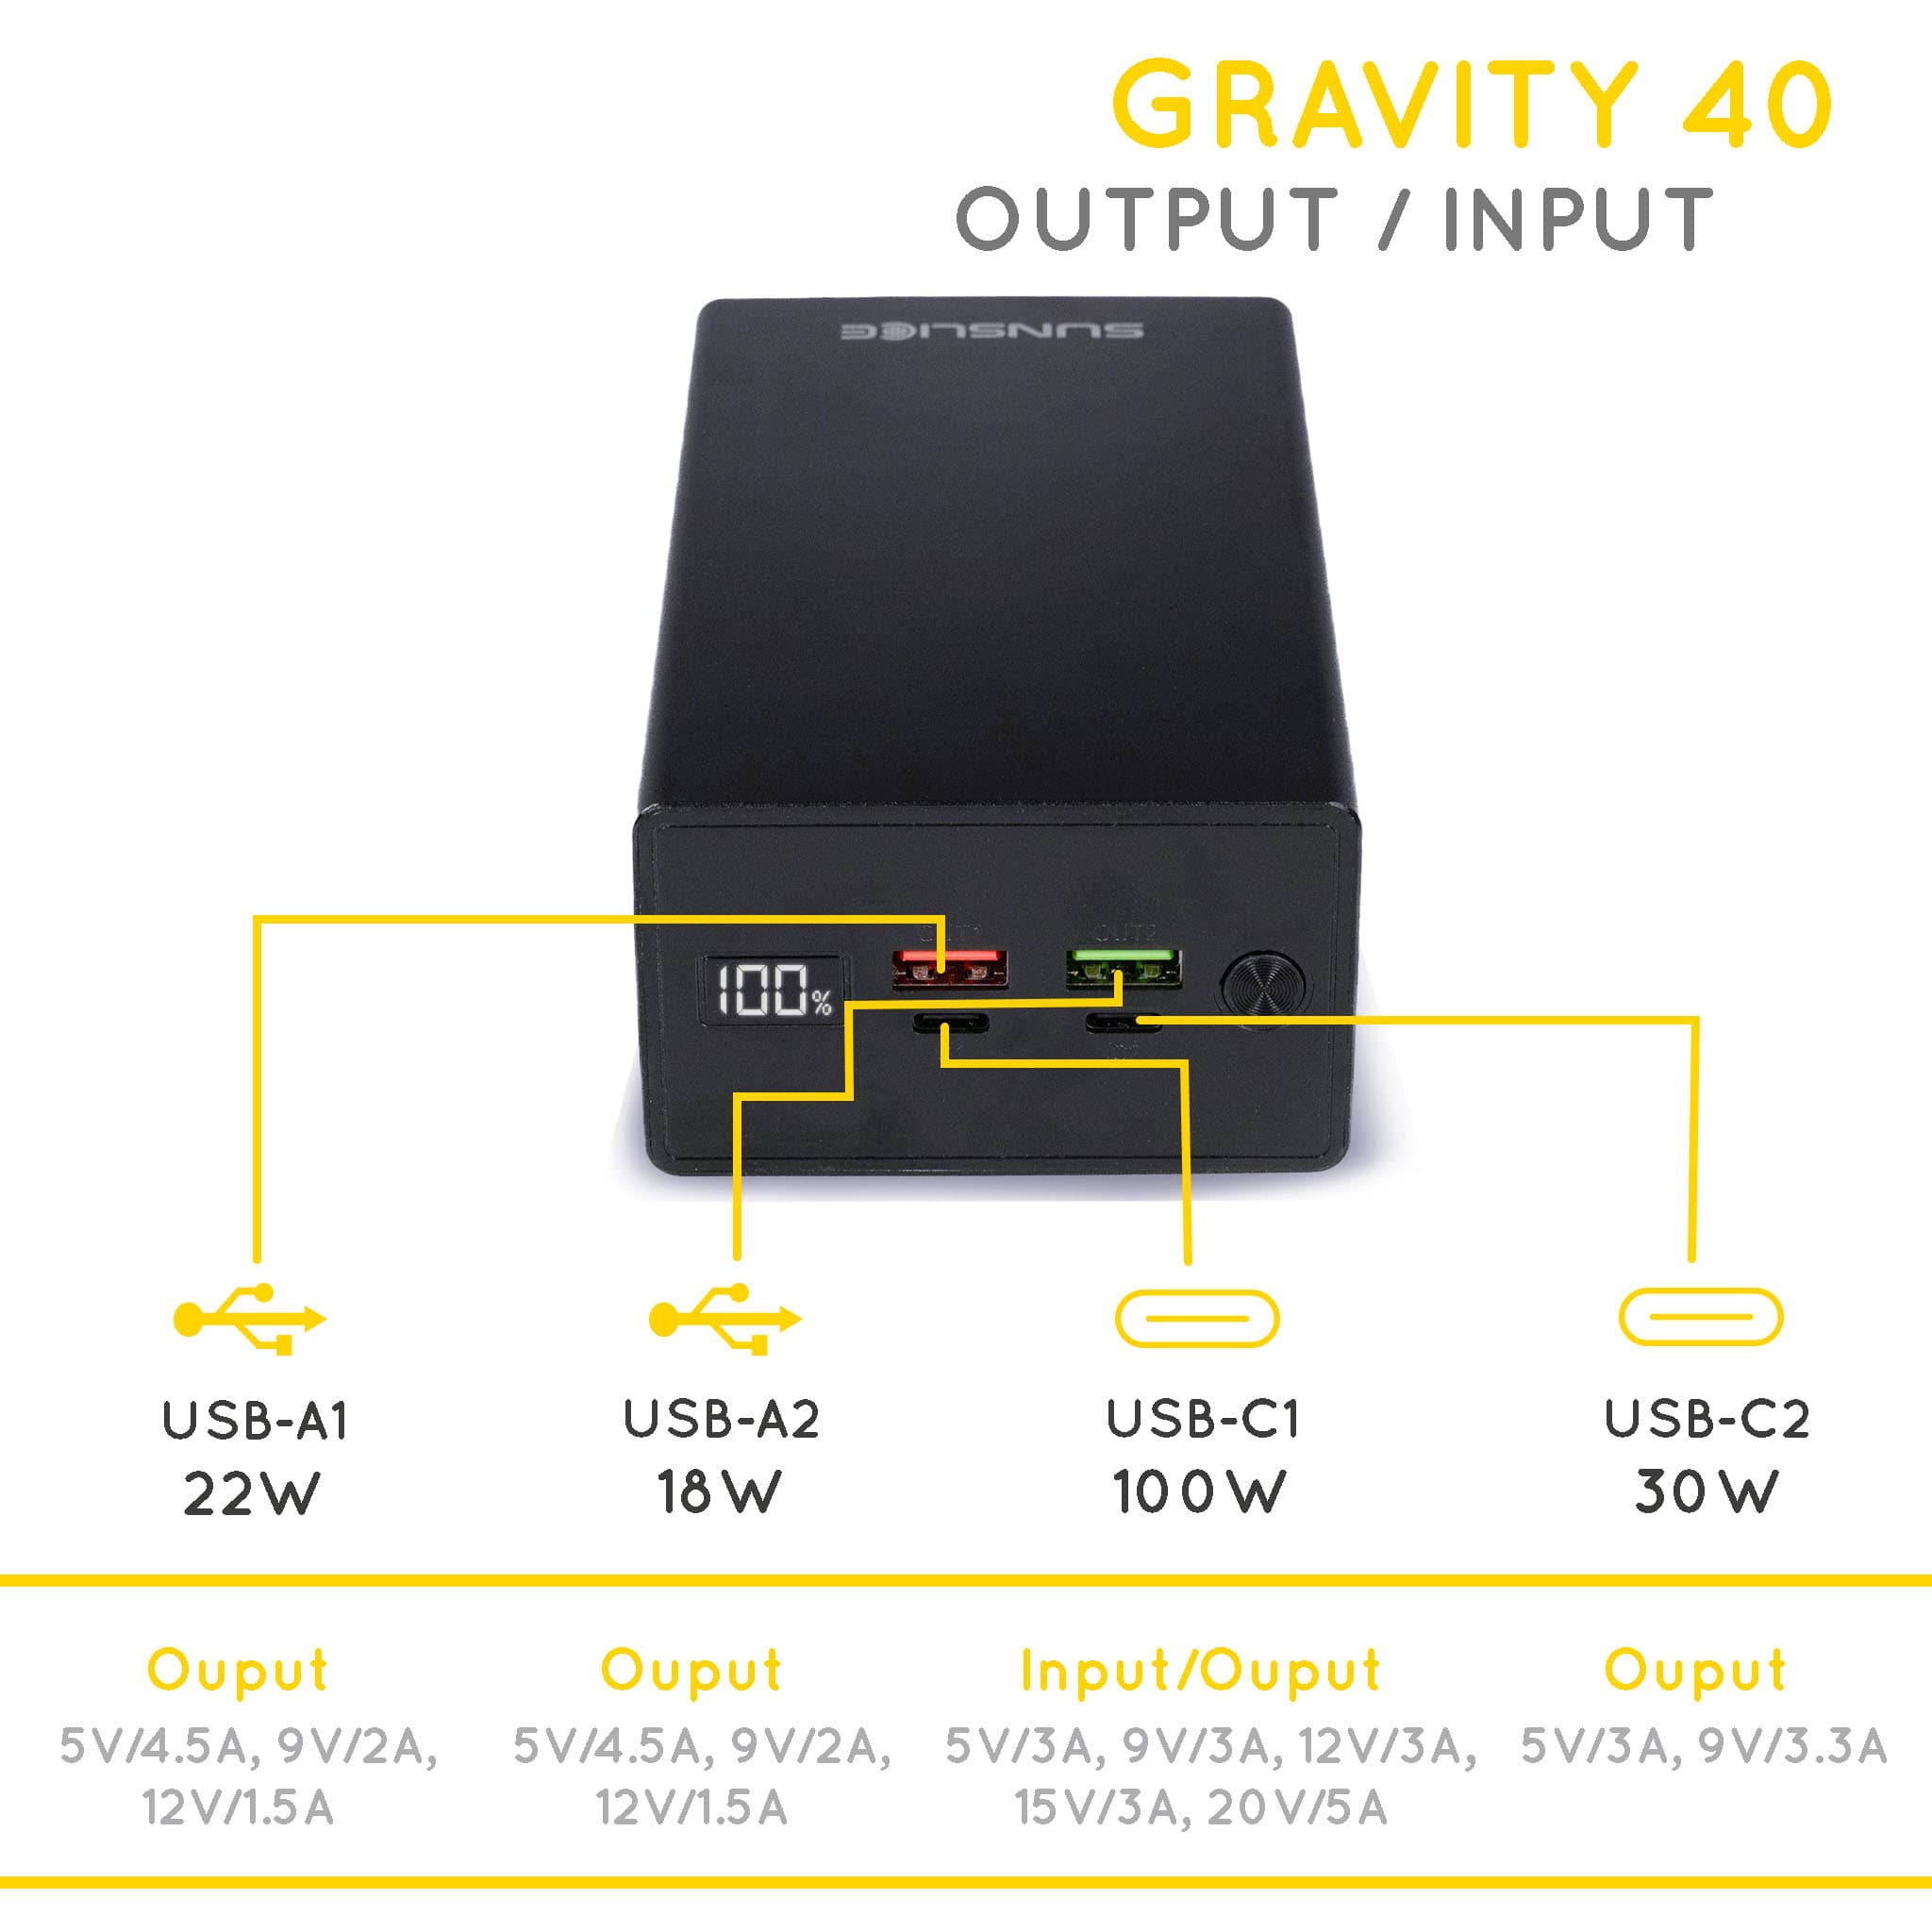 Gravity 40 backup battery for laptop output/ input : USB-A1 22W, USB-A2 18W, USB-C1 100W, USB-C2 30W